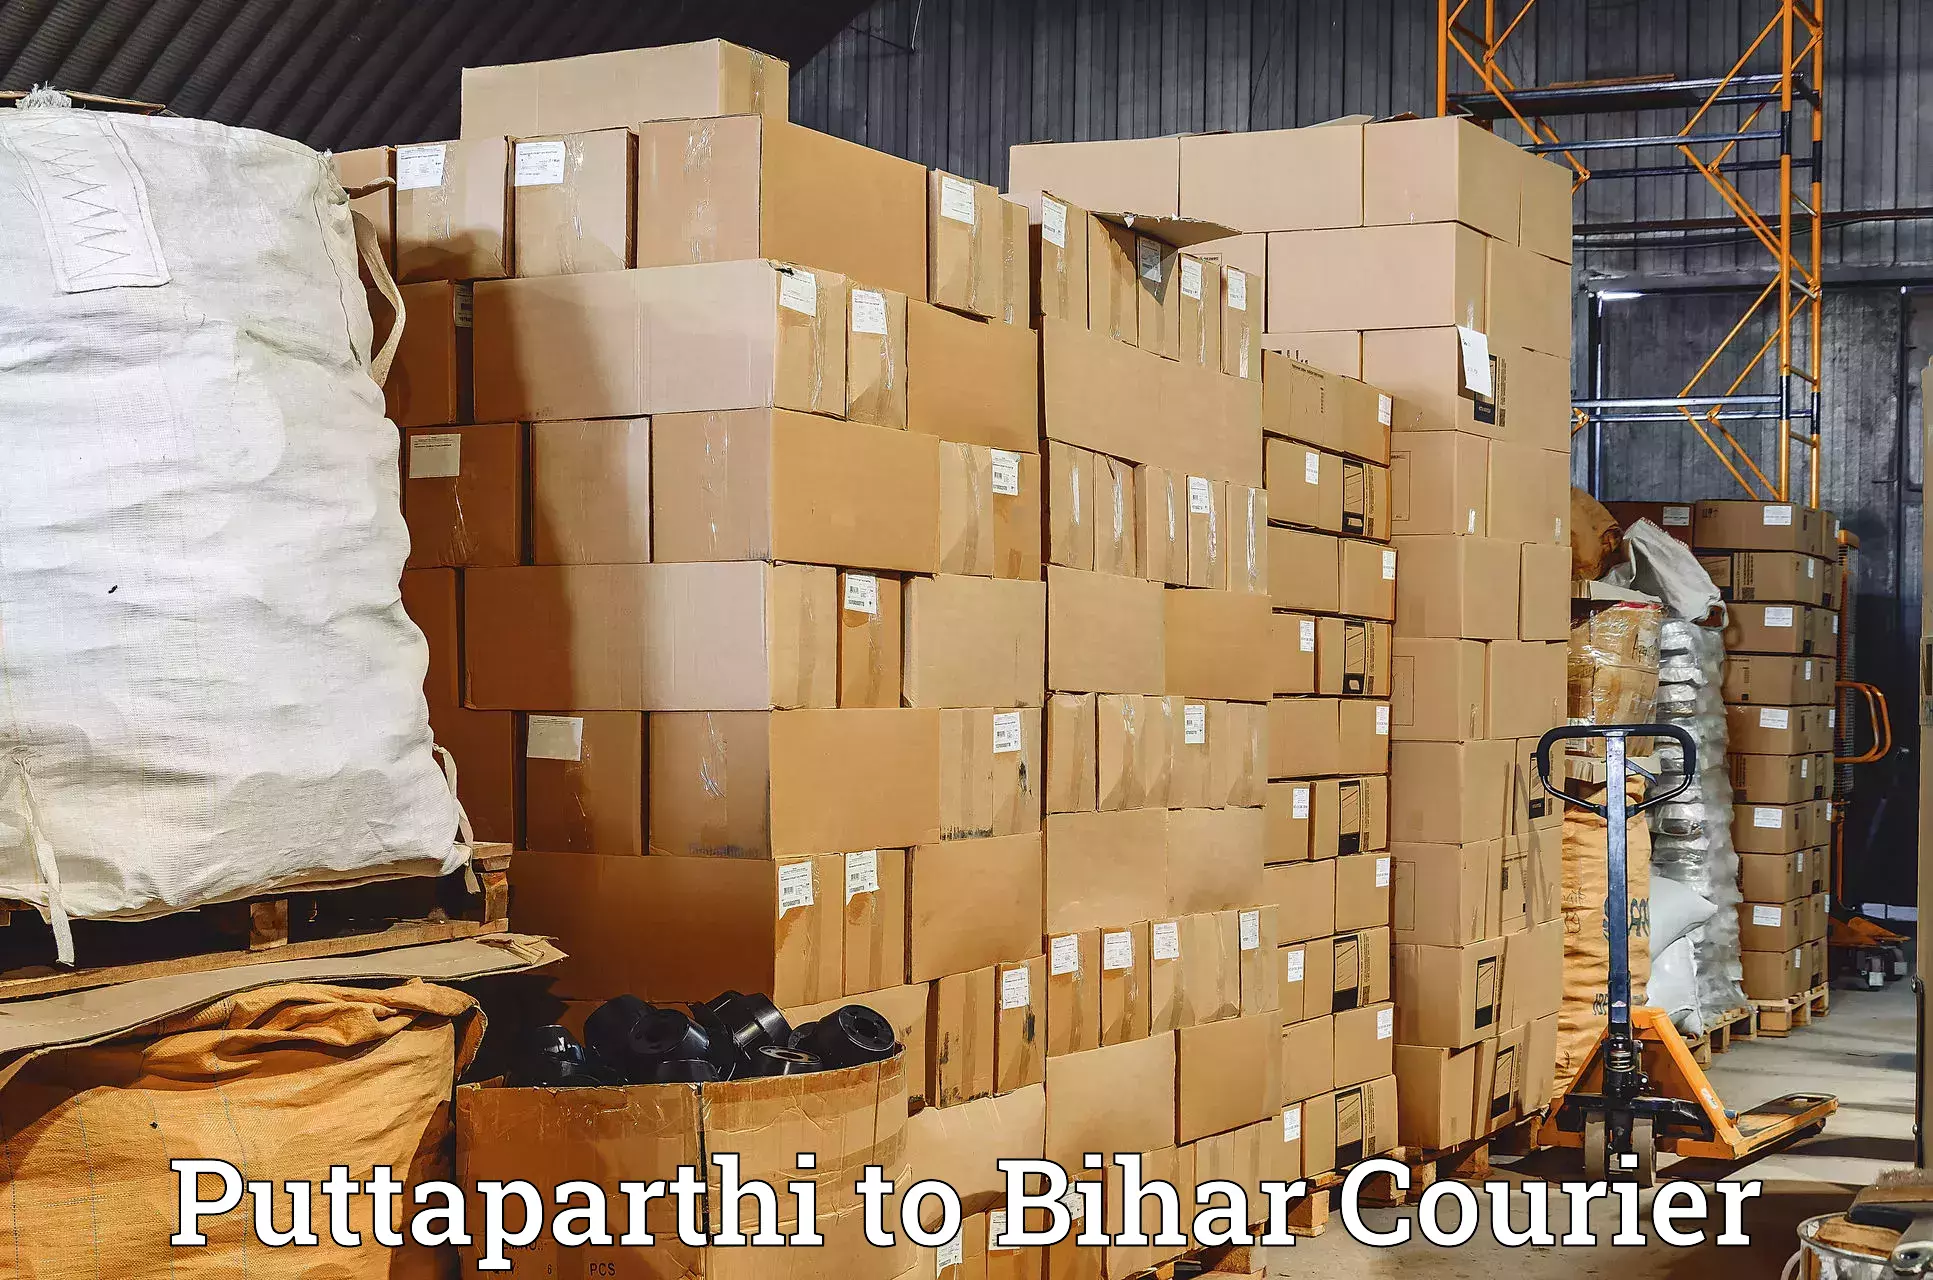 Courier service comparison Puttaparthi to Basopatti